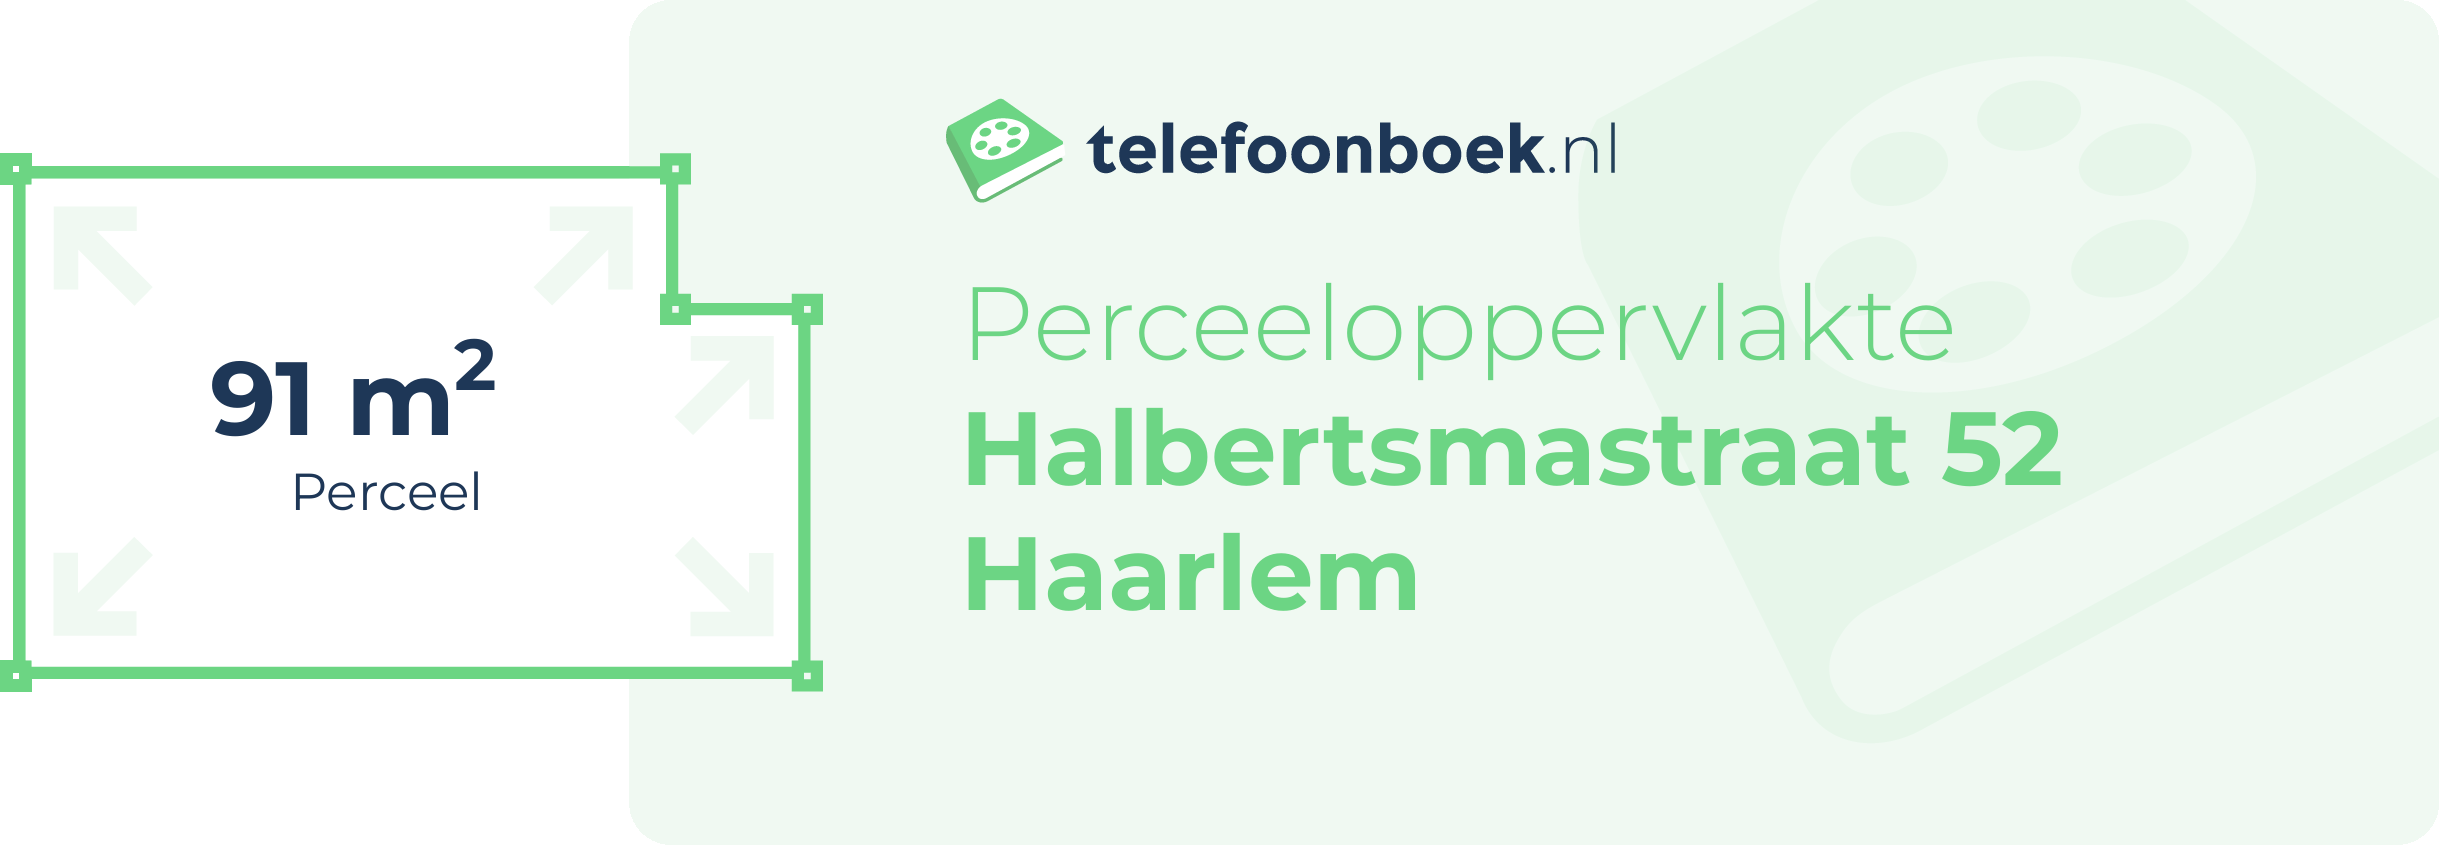 Perceeloppervlakte Halbertsmastraat 52 Haarlem